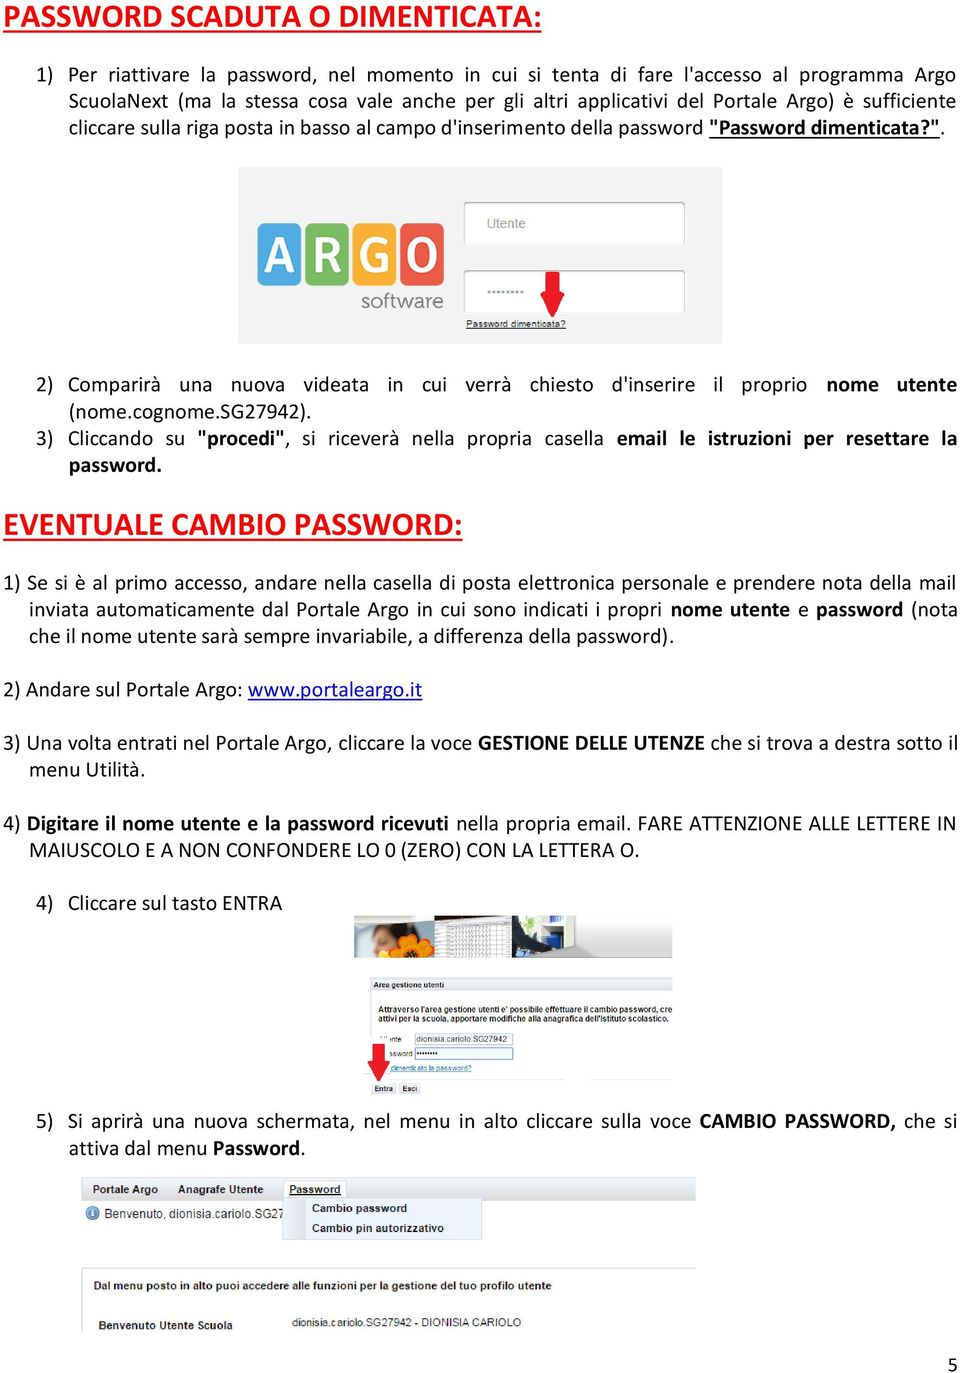 cognome.sg27942). 3) Cliccando su "procedi", si riceverà nella propria casella email le istruzioni per resettare la password.